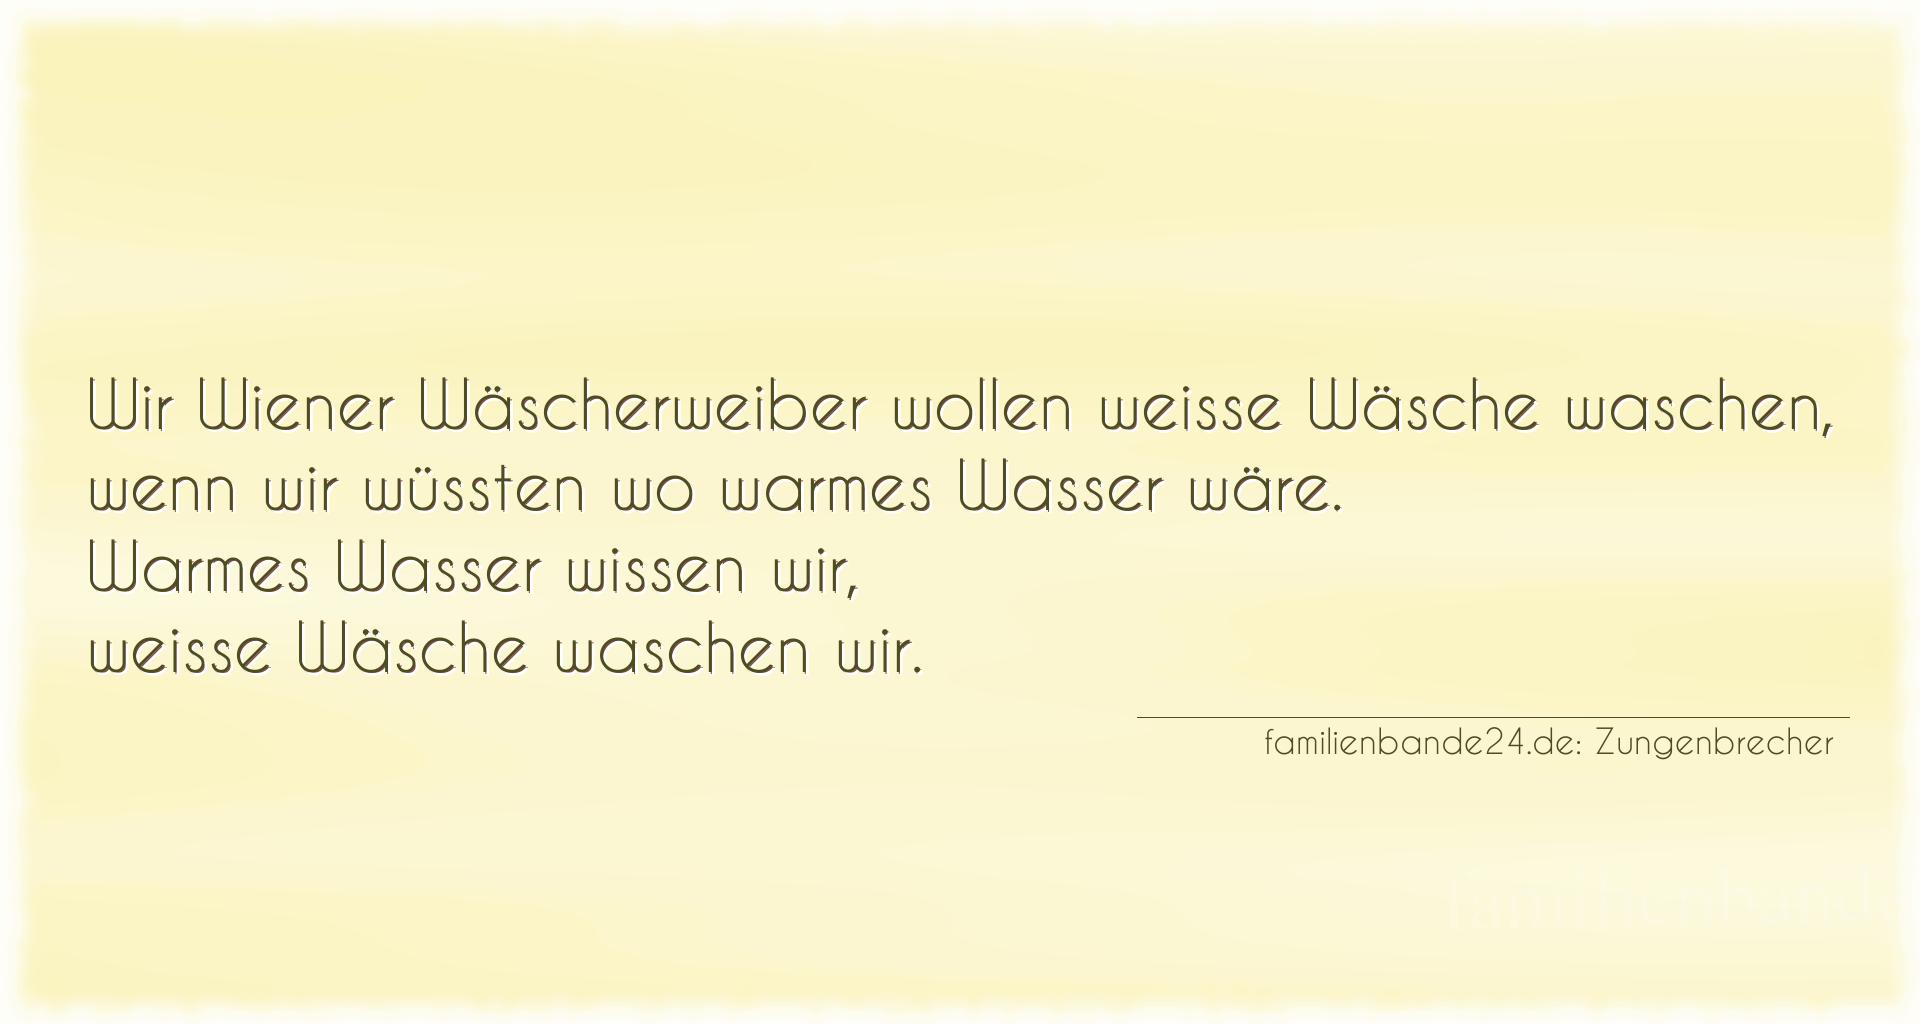 Zungenbrecher Nummer 707: Wir Wiener Wäscherweiber wollen weiße Wäsche waschen, w [...]